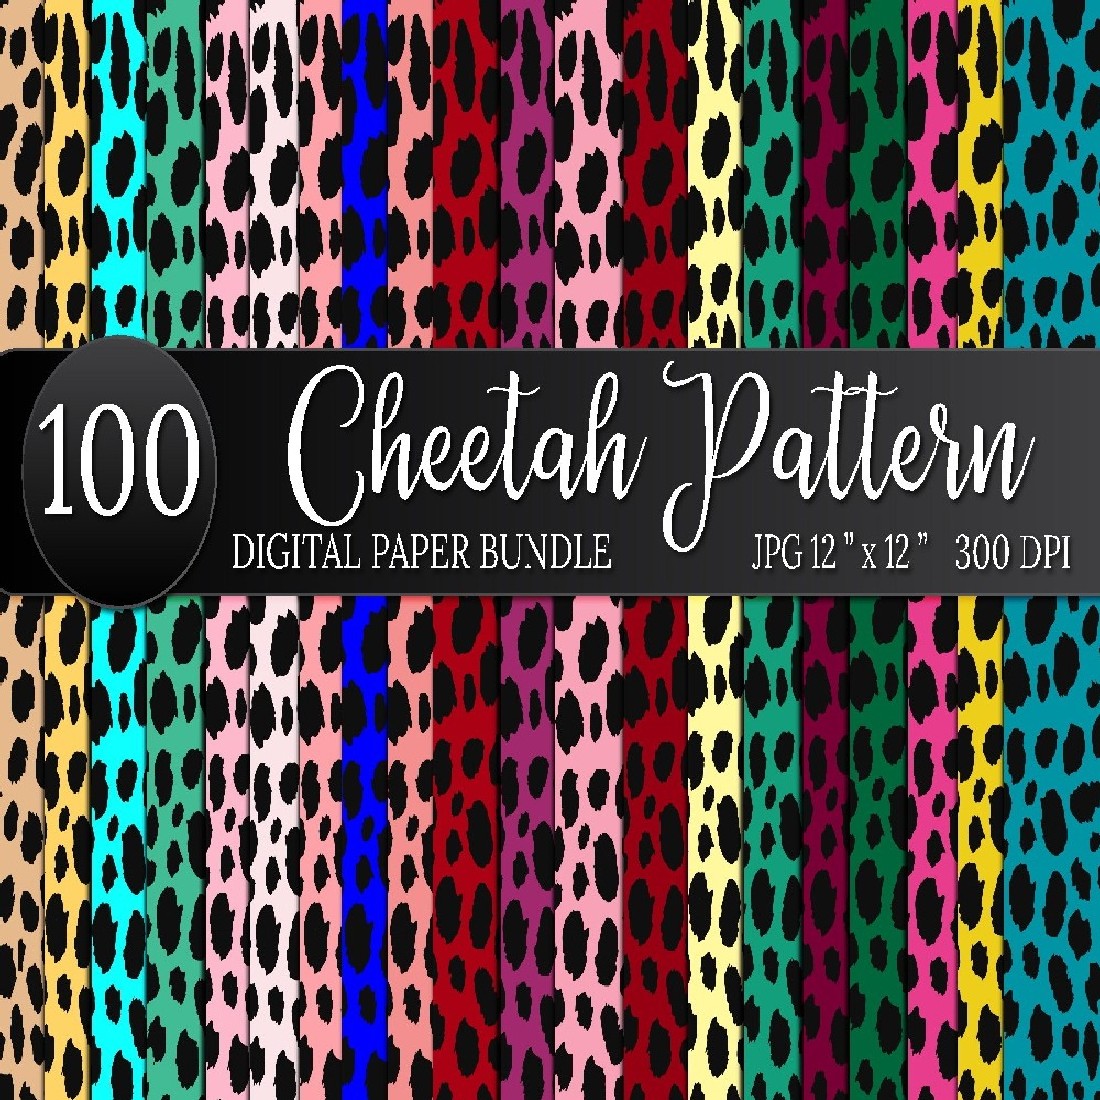 700 Mega Bundle Animal Print Background, cheetah pattern.